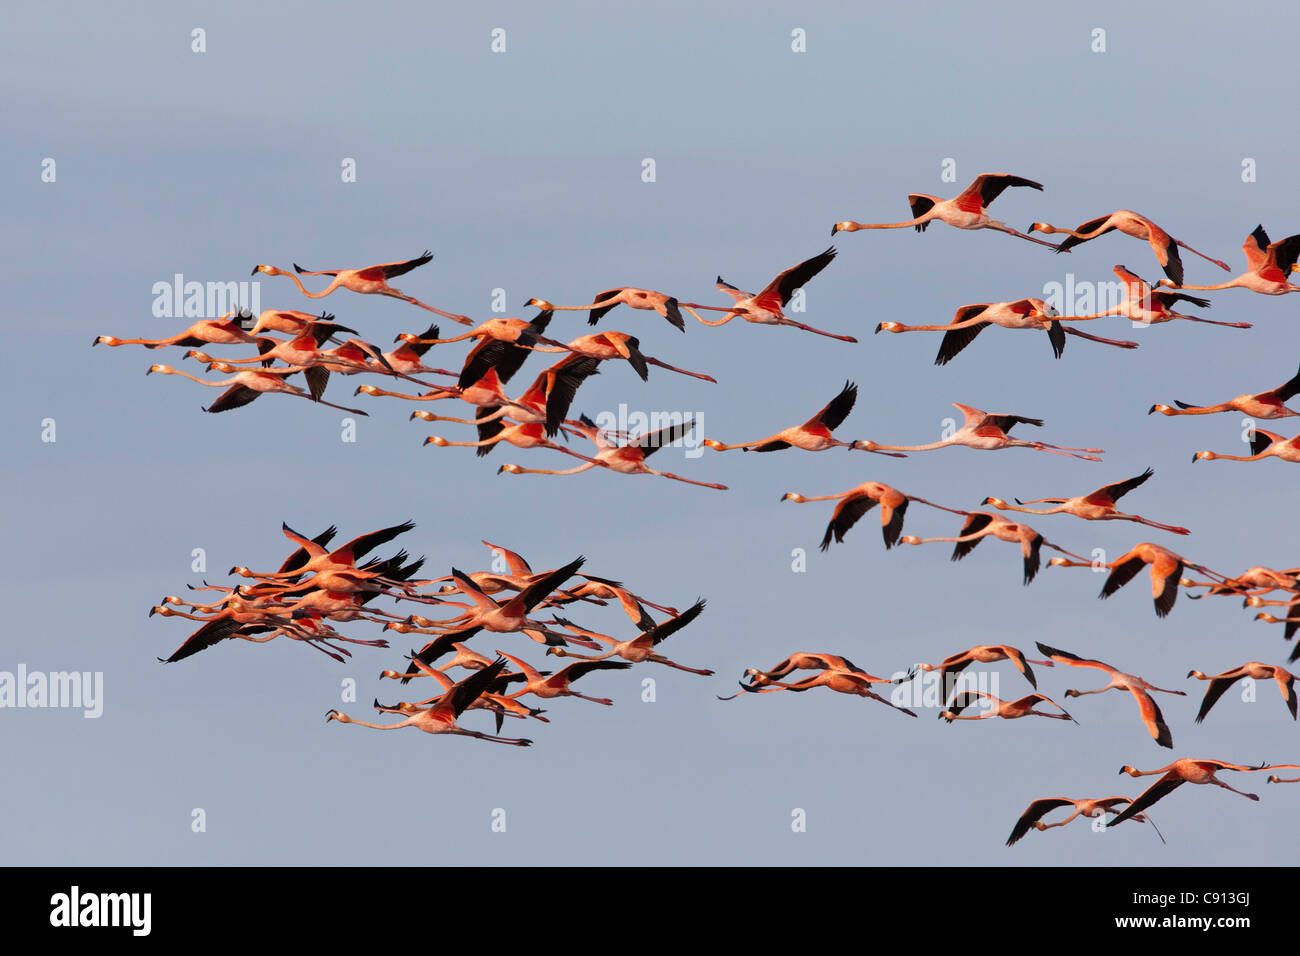 The Netherlands, Bonaire Island, Dutch Caribbean, Kralendijk, American or Caribbean Flamingo ( Phoenicopterus ruber ). Stock Photo